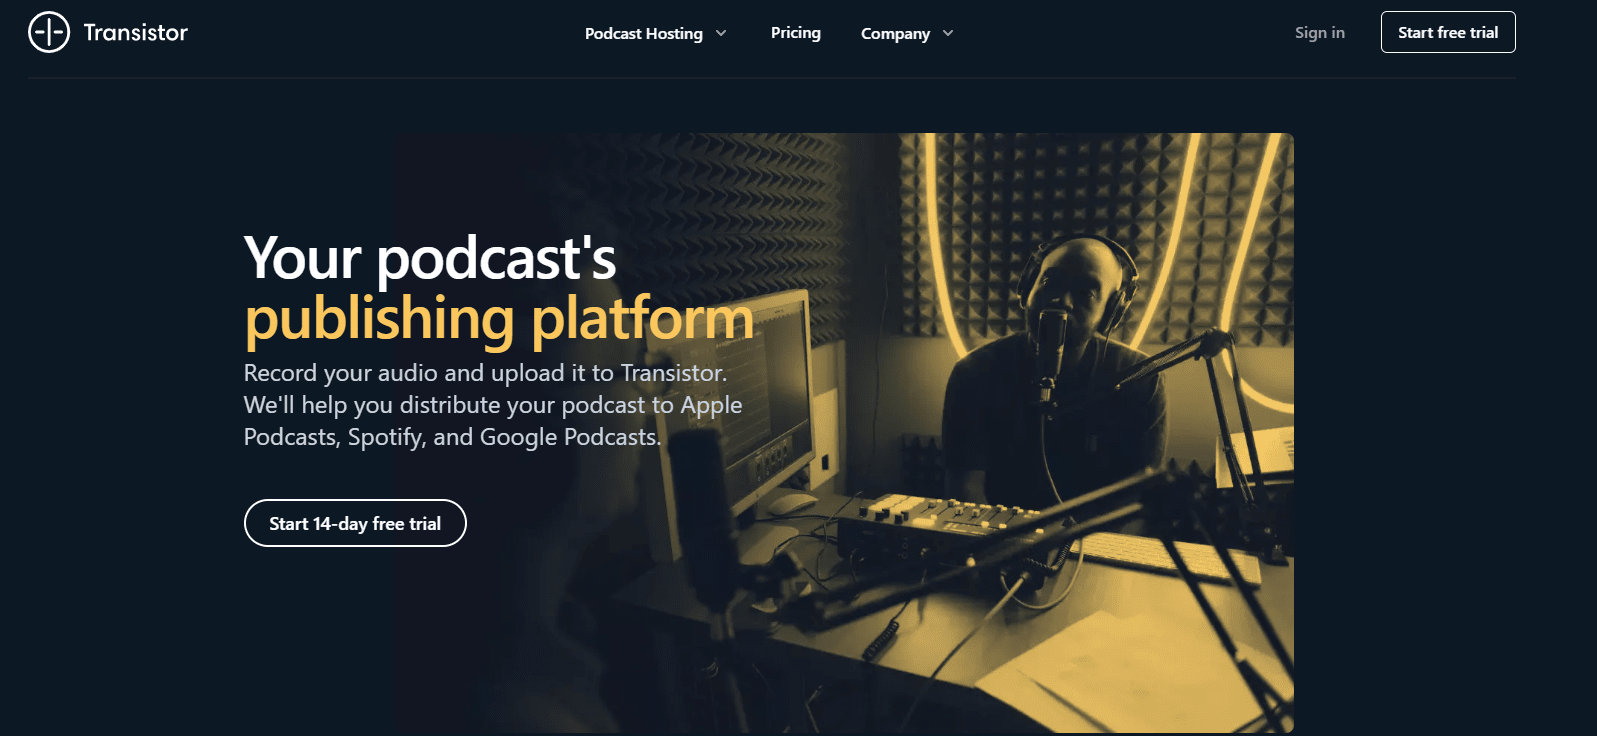 Transistor Overview - Best Podcast Hosting Platforms